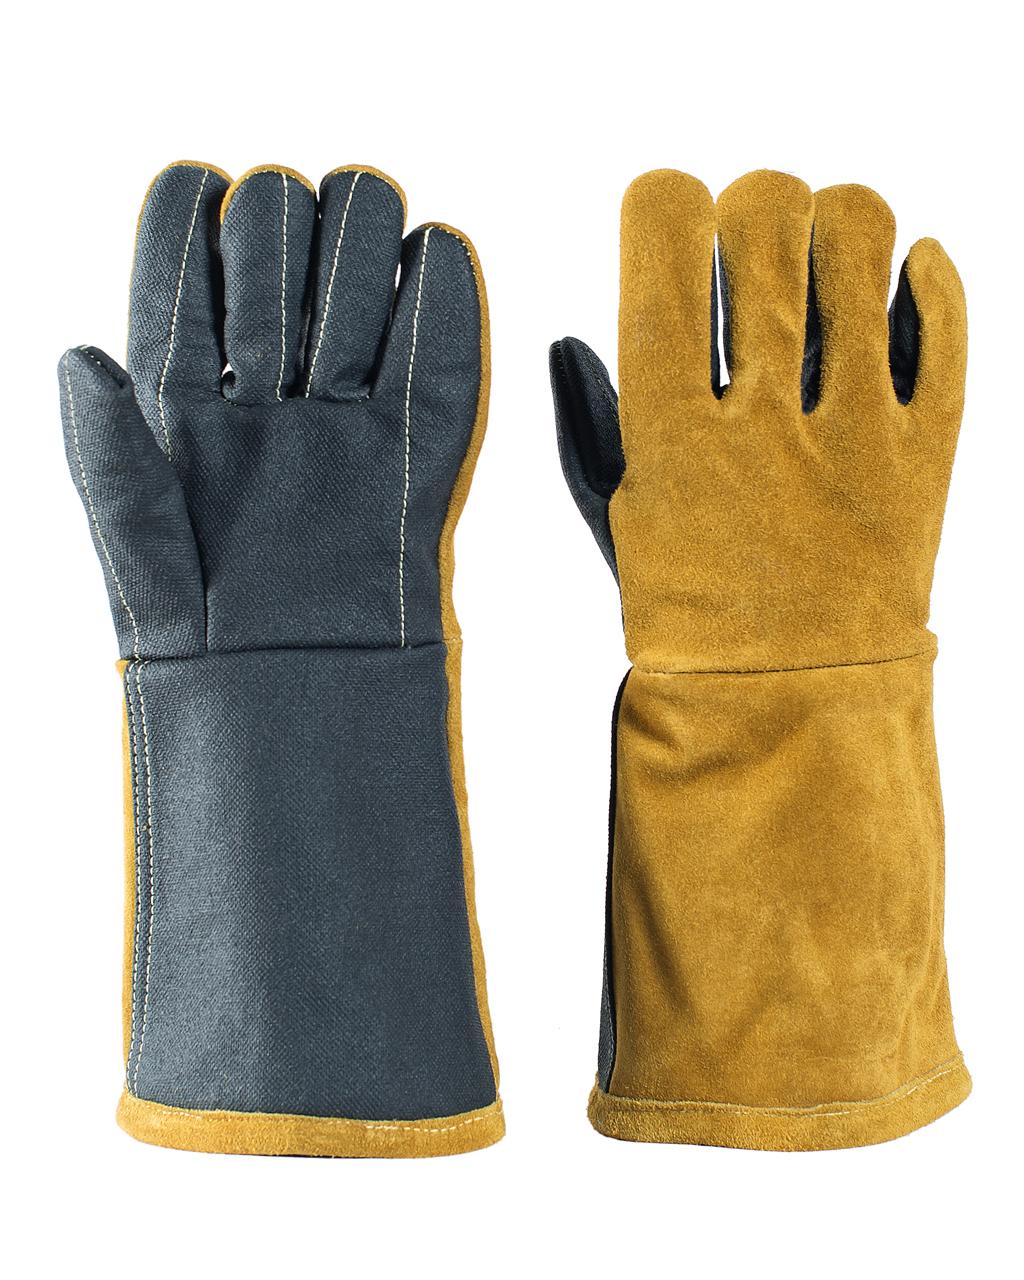 RazorStop Gloves